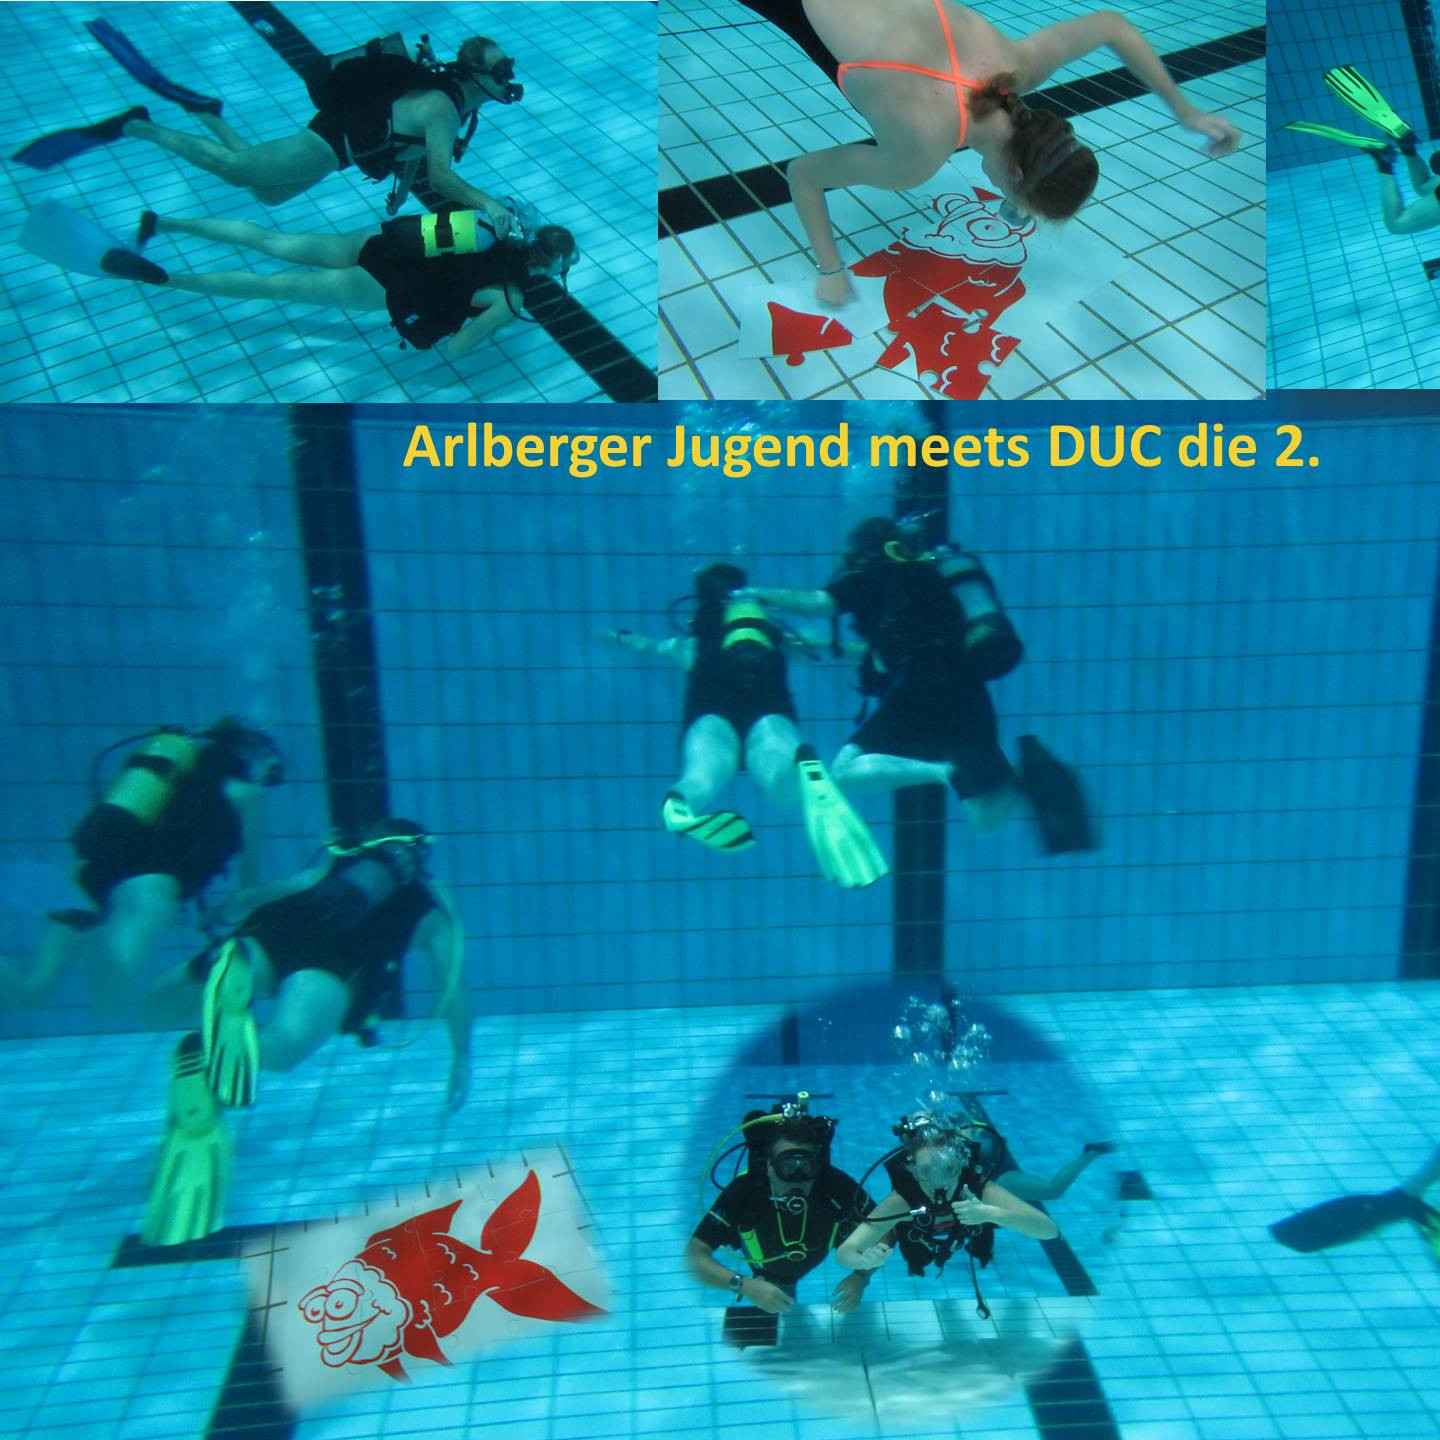 Arlberger_Jugend_meets_DUC_die_2